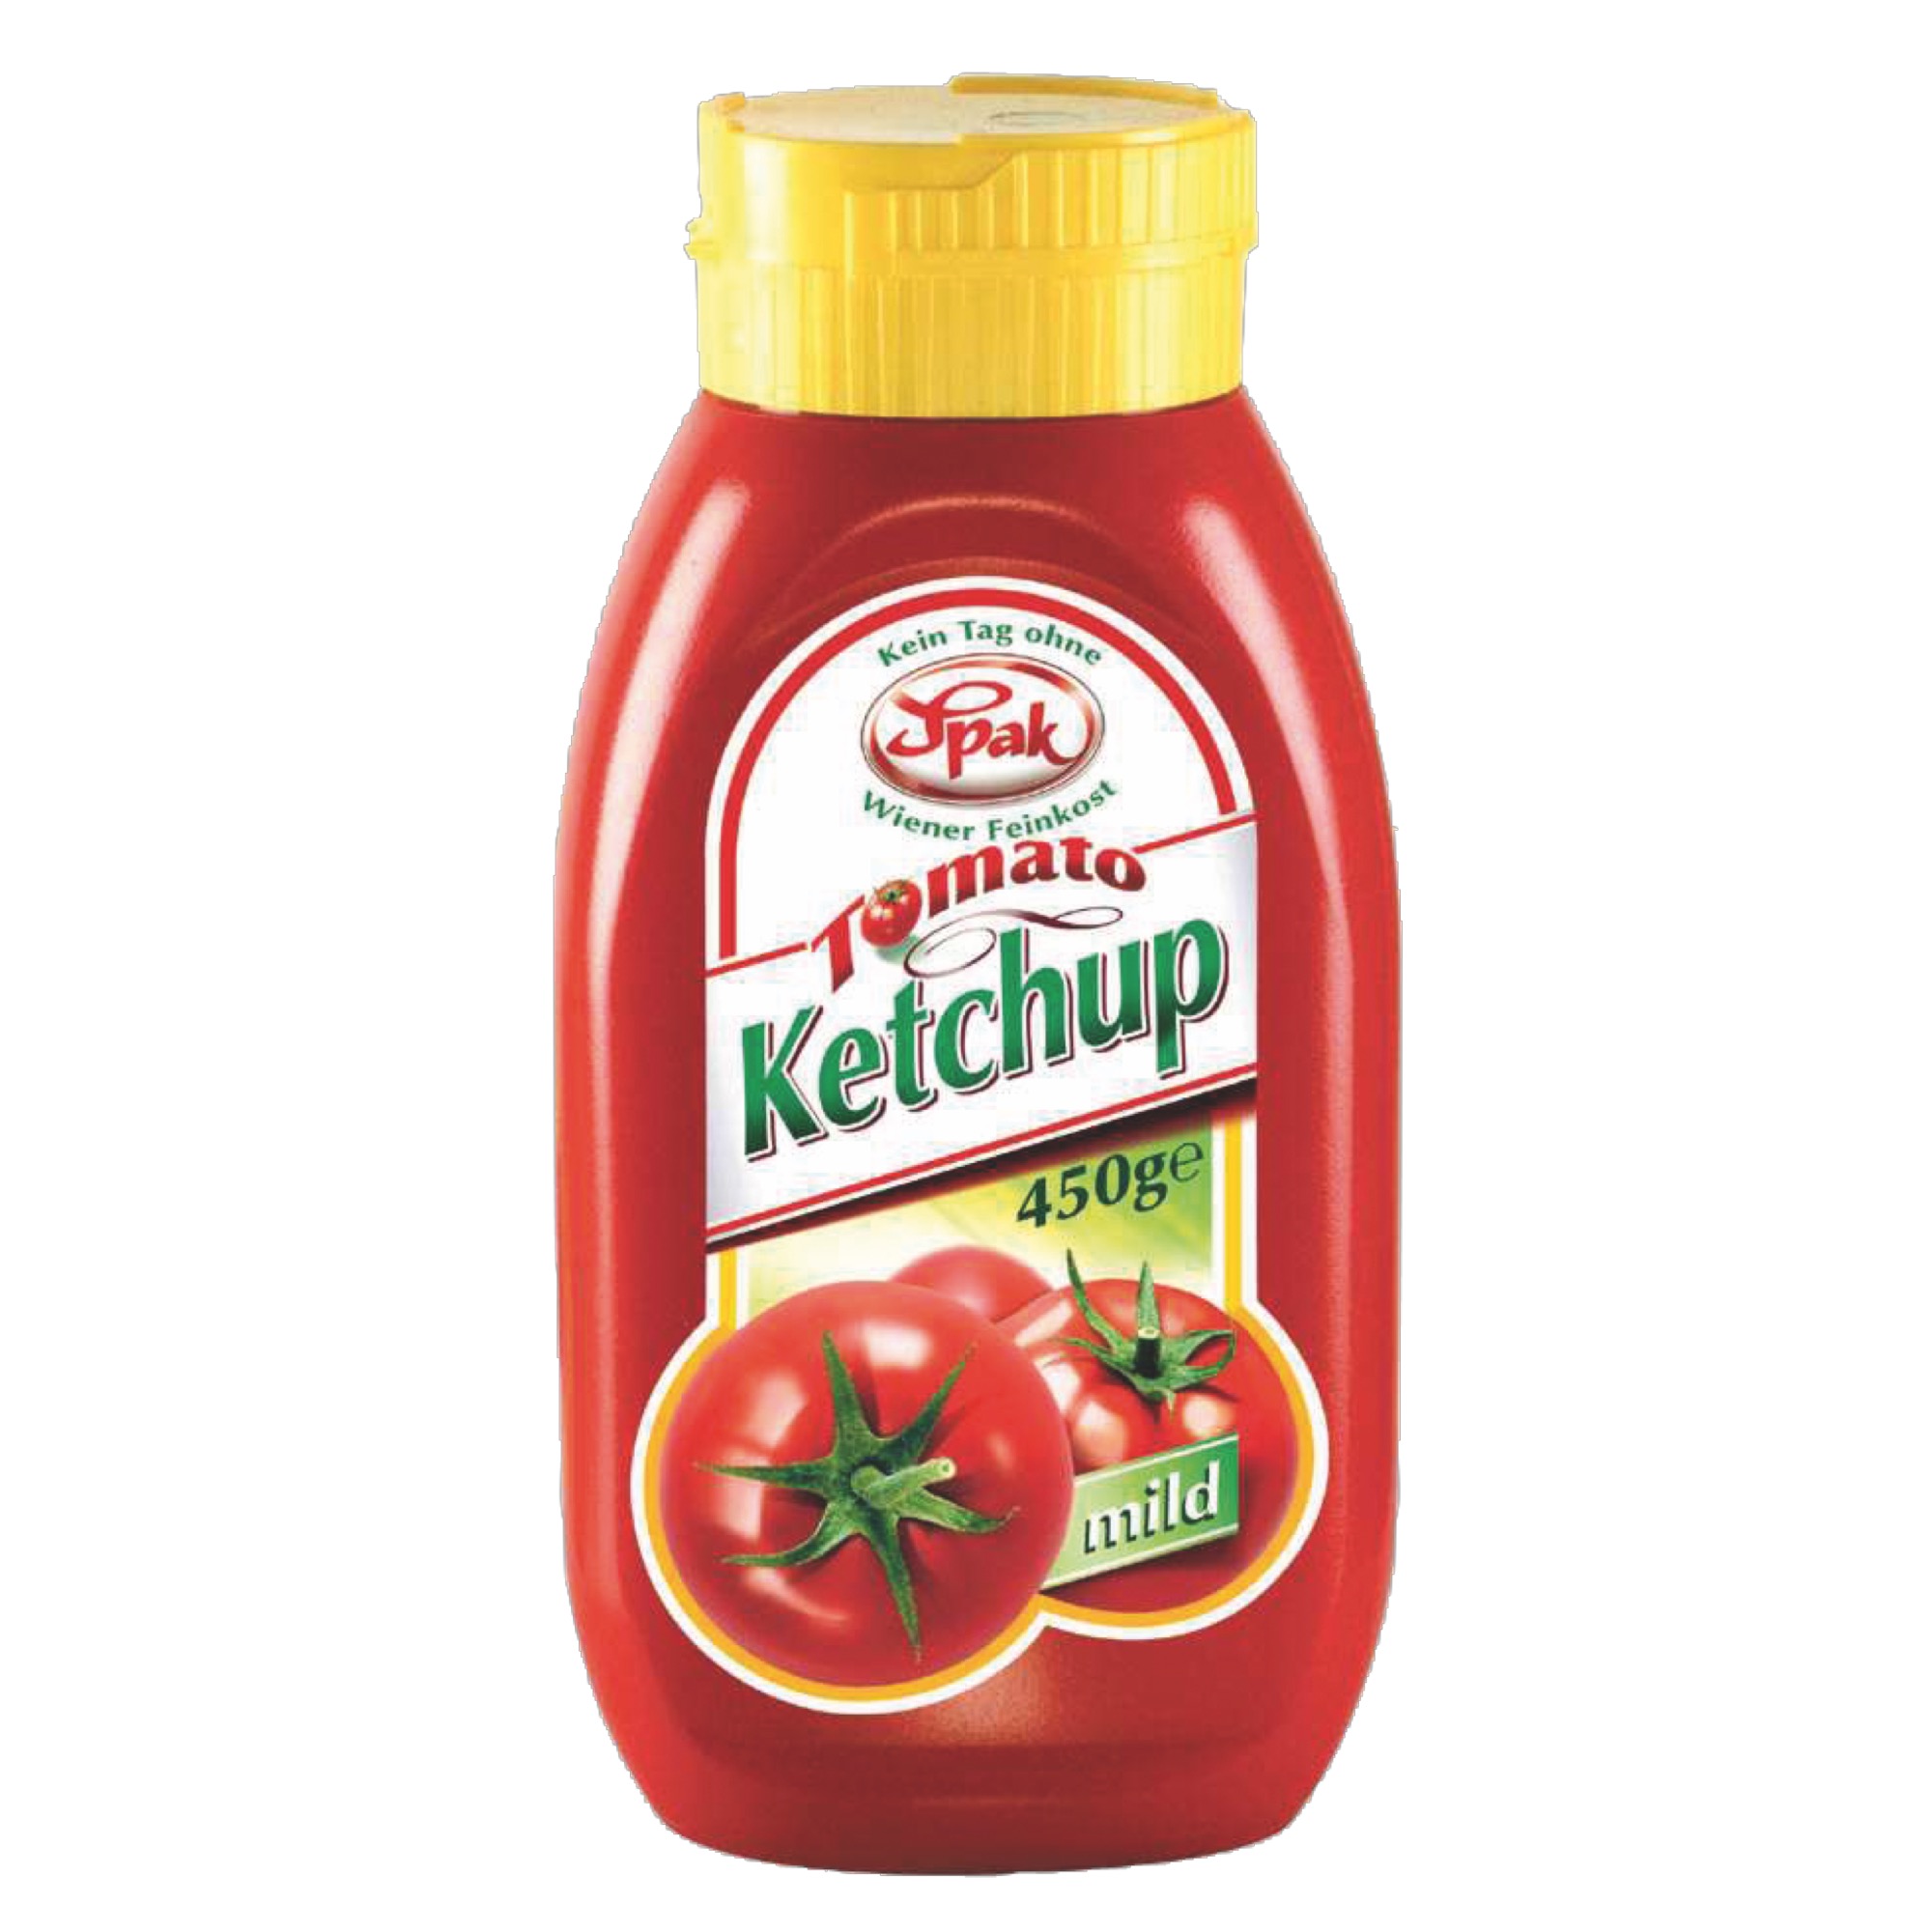 Spak kečup 450g, jemný